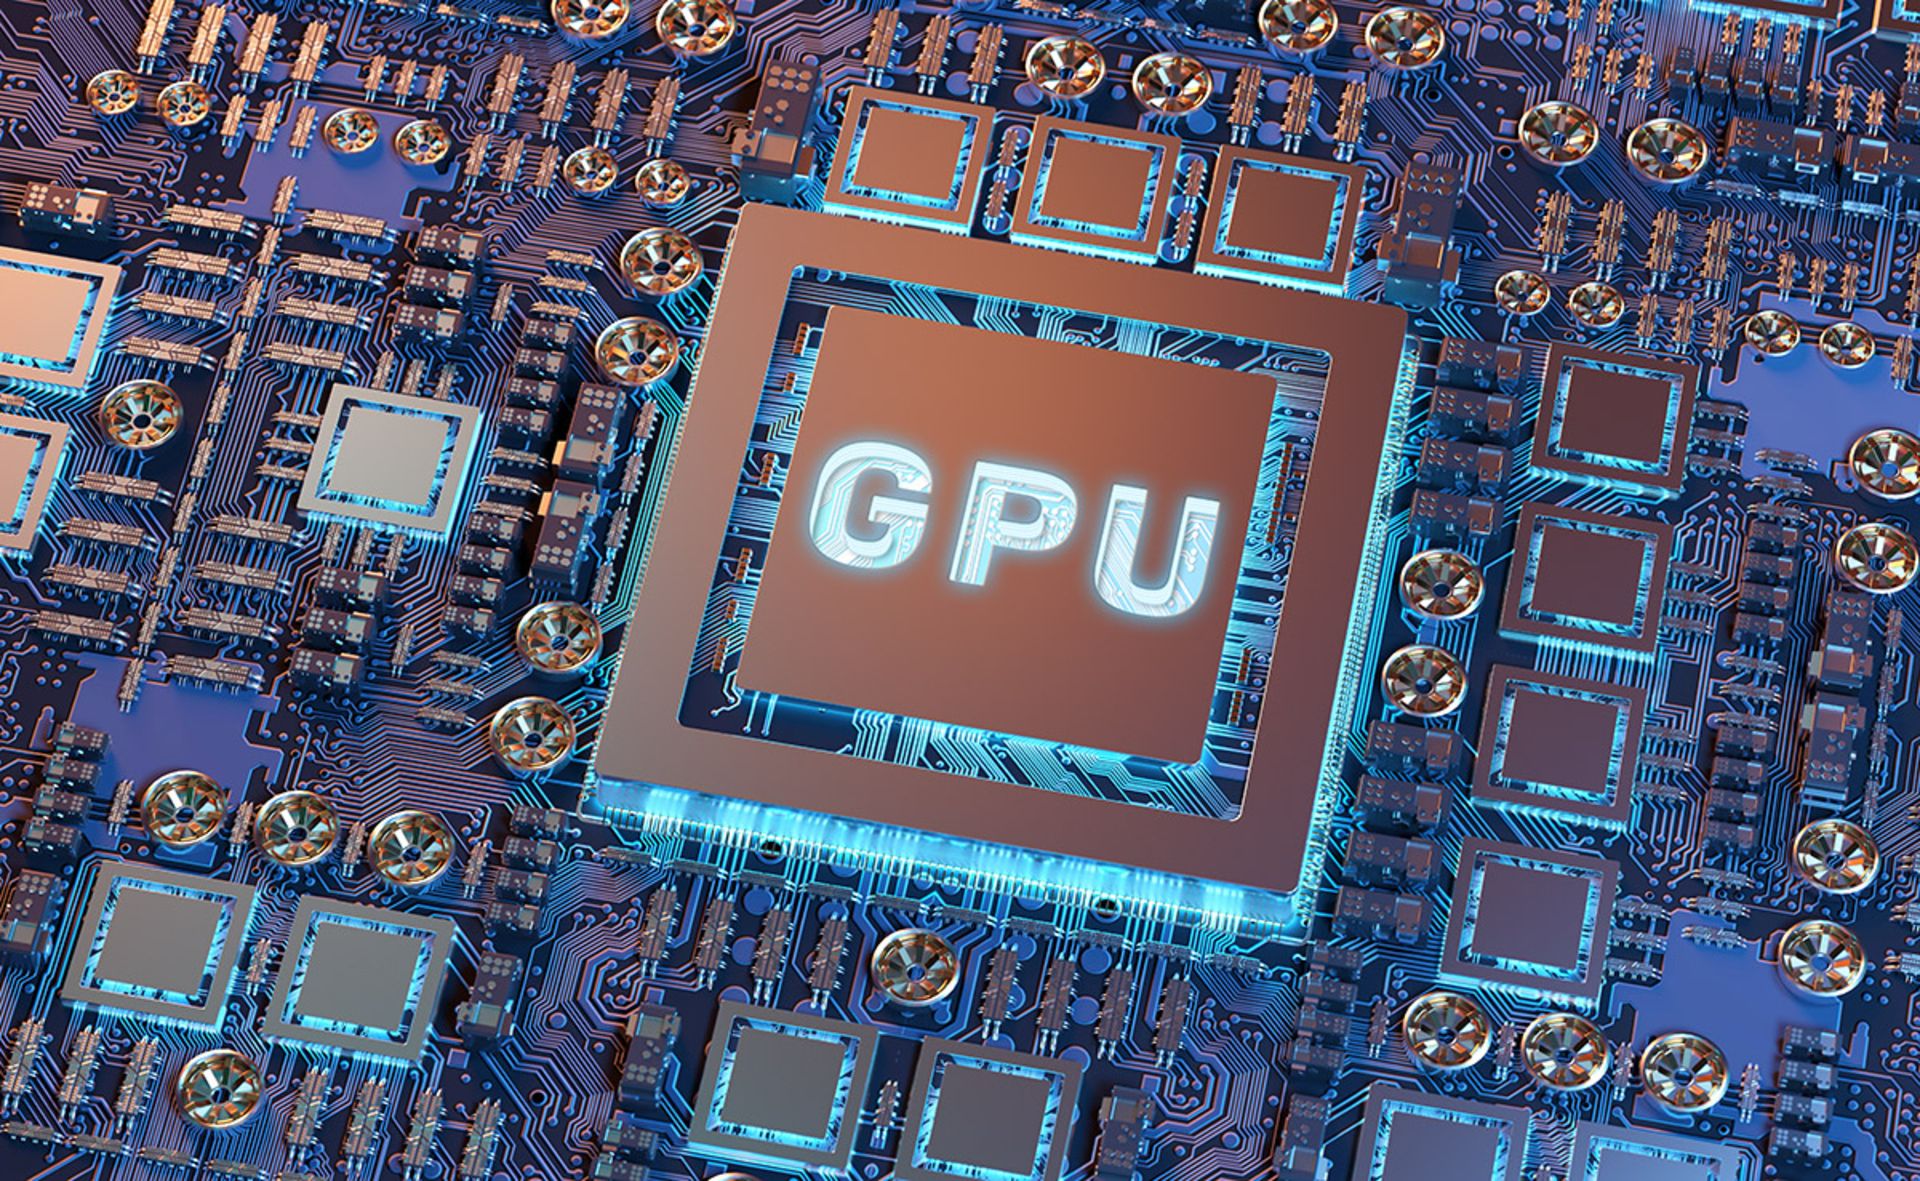 مرجع متخصصين ايران GPU